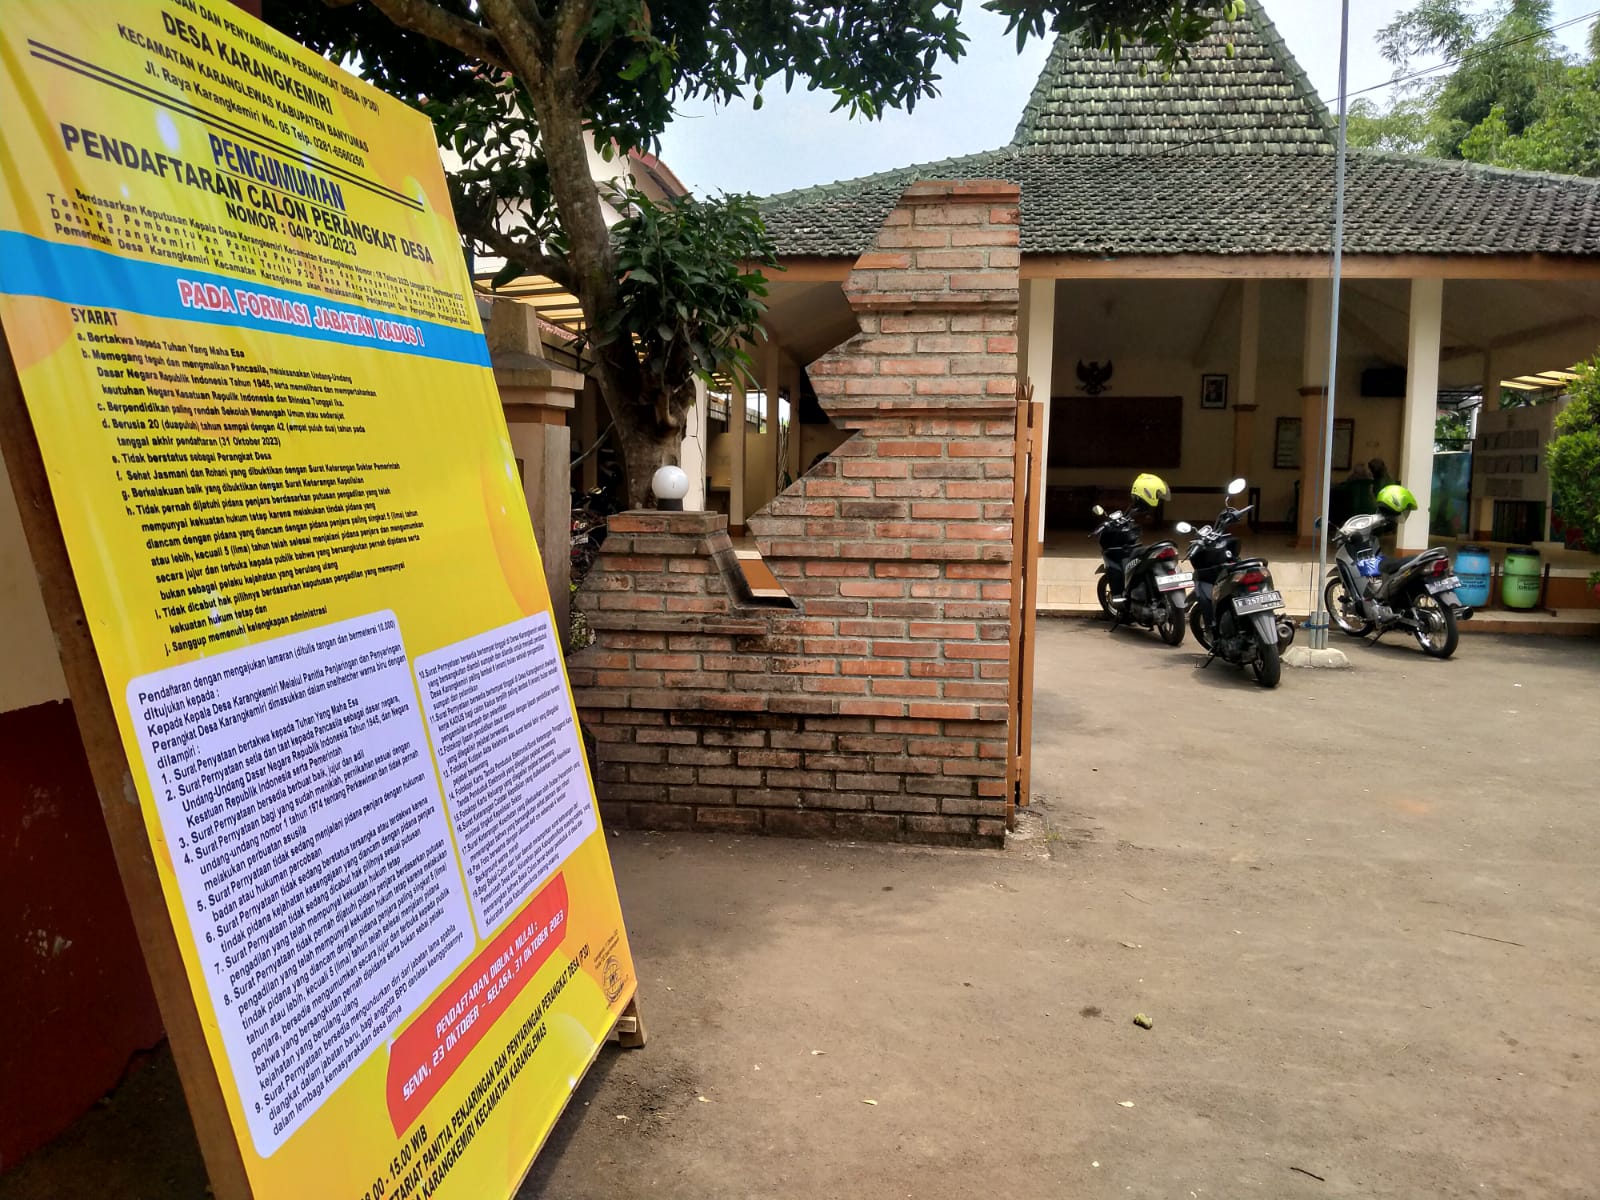 Pendaftaran Kepala Dusun I Desa Karangkemiri, Karanglewas, Banyumas Dibuka Pekan Depan